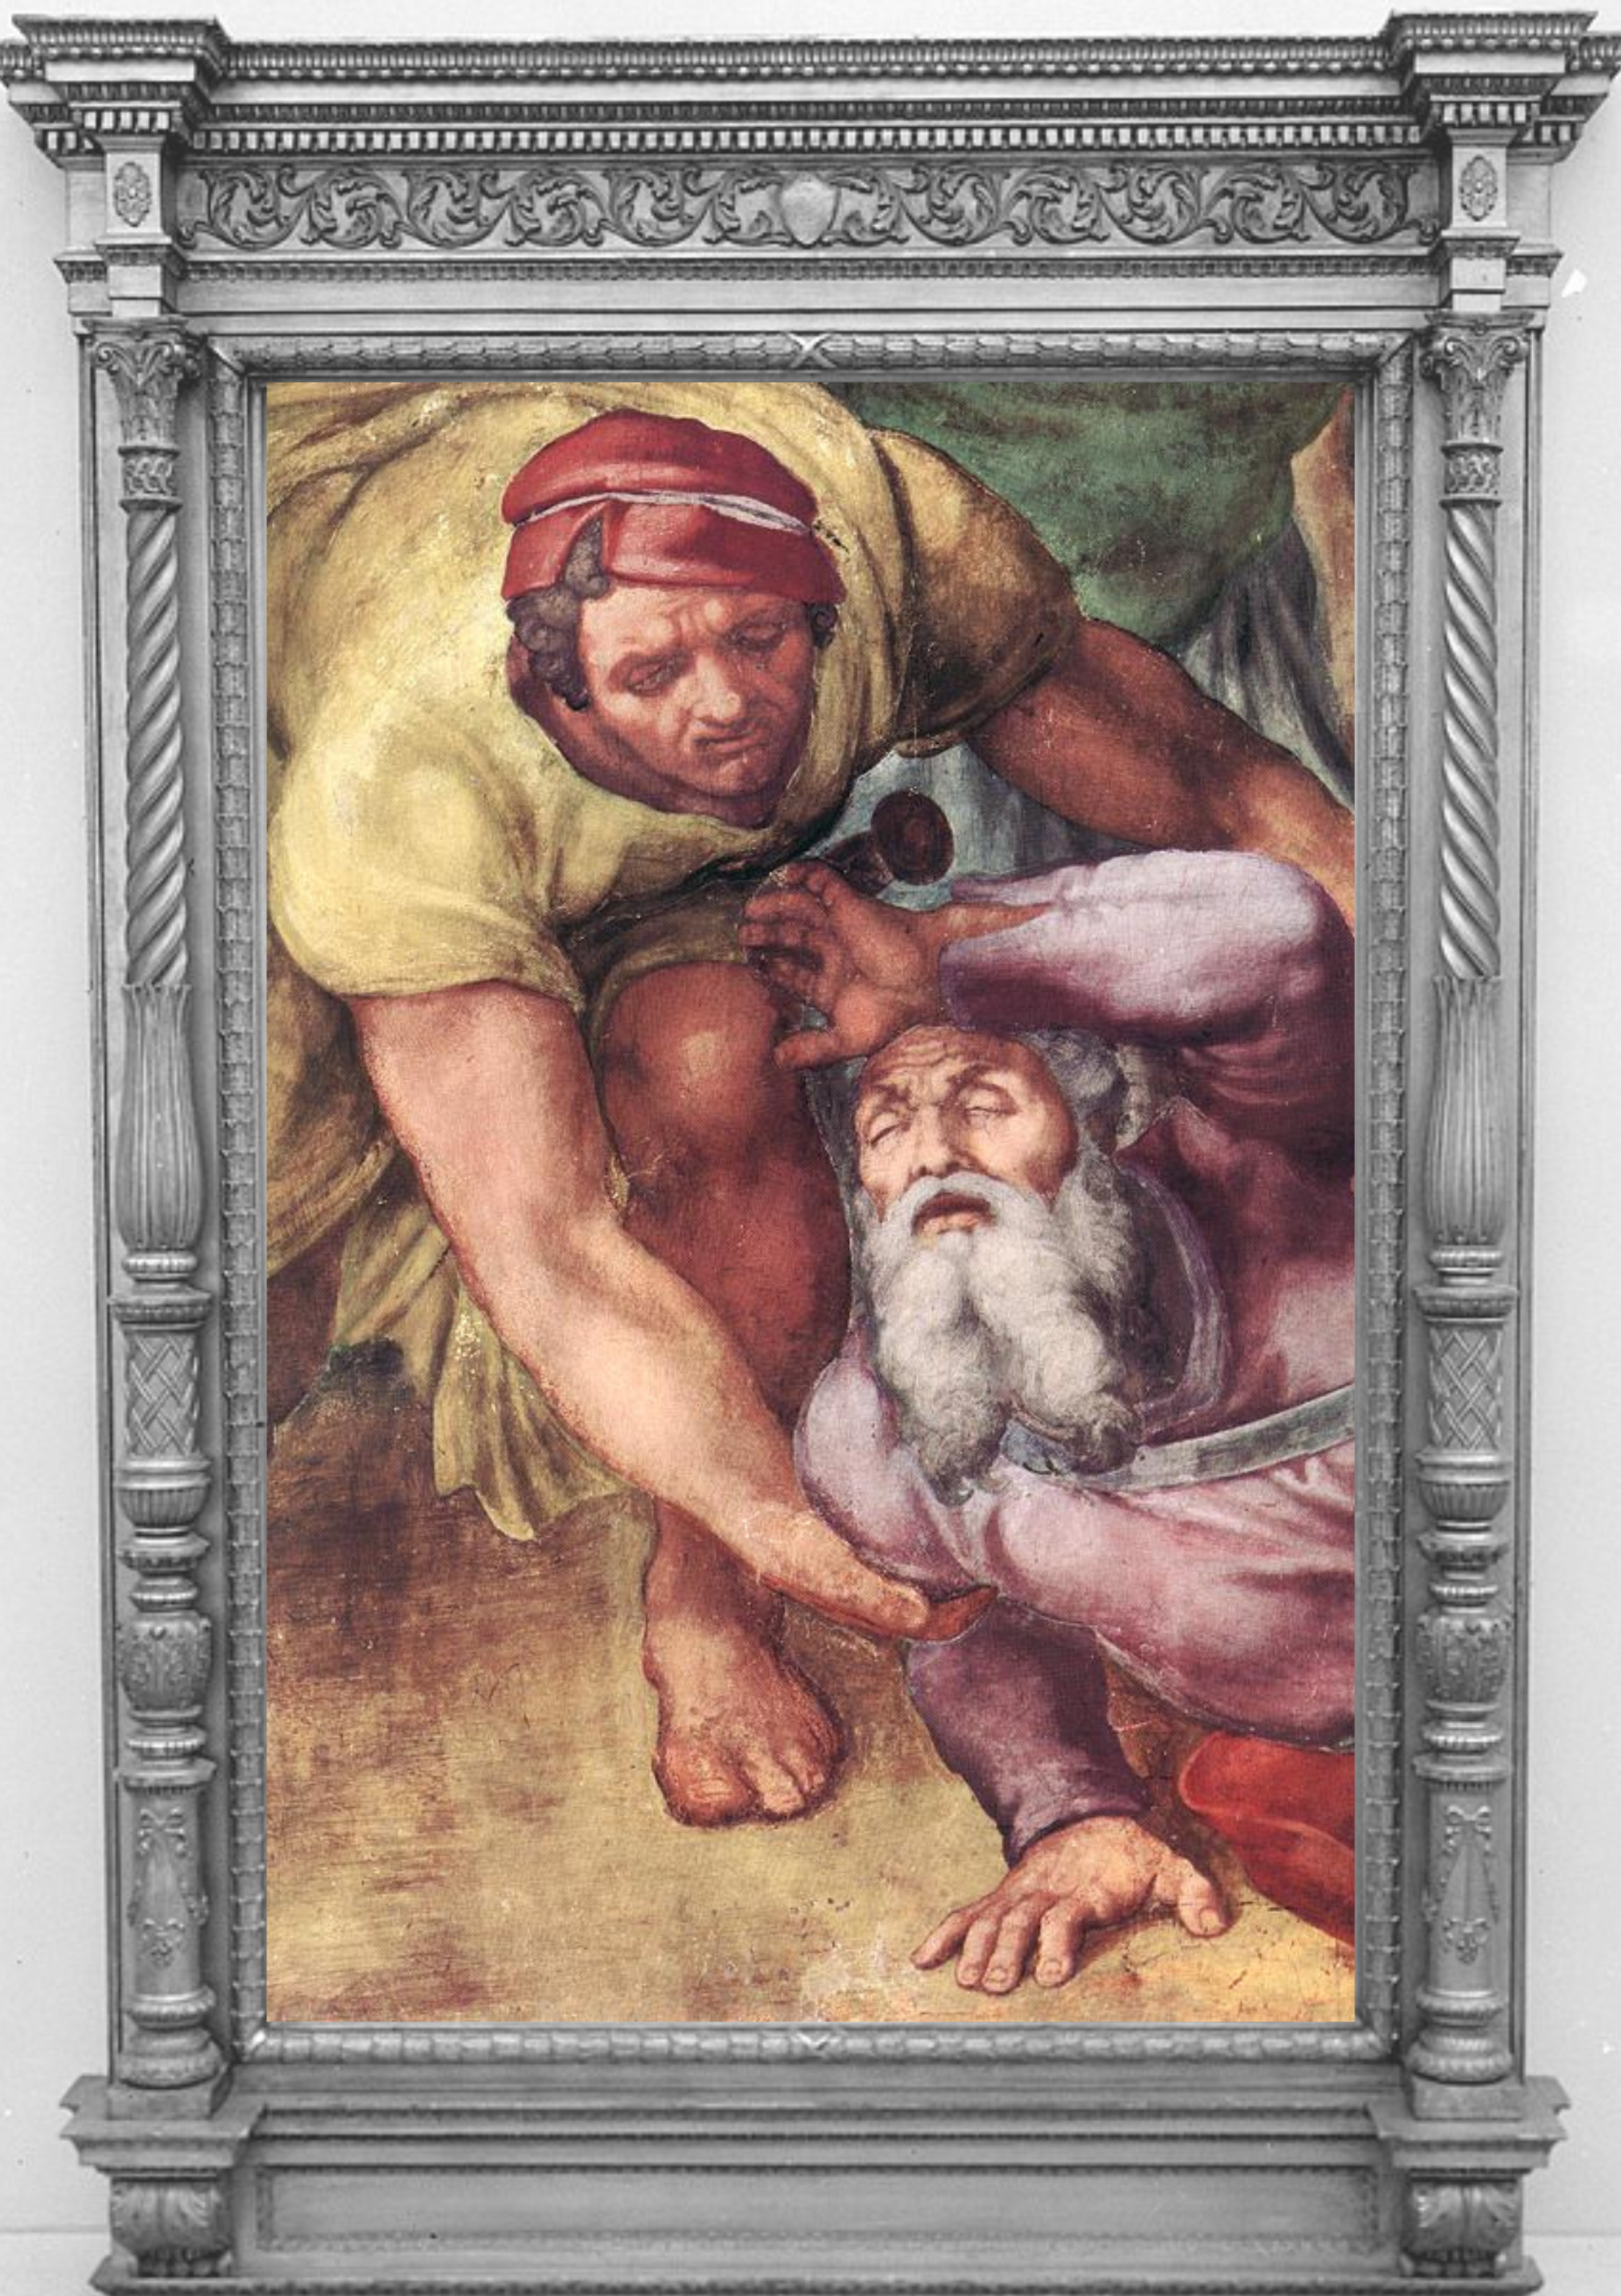 Paul by Michelangelo